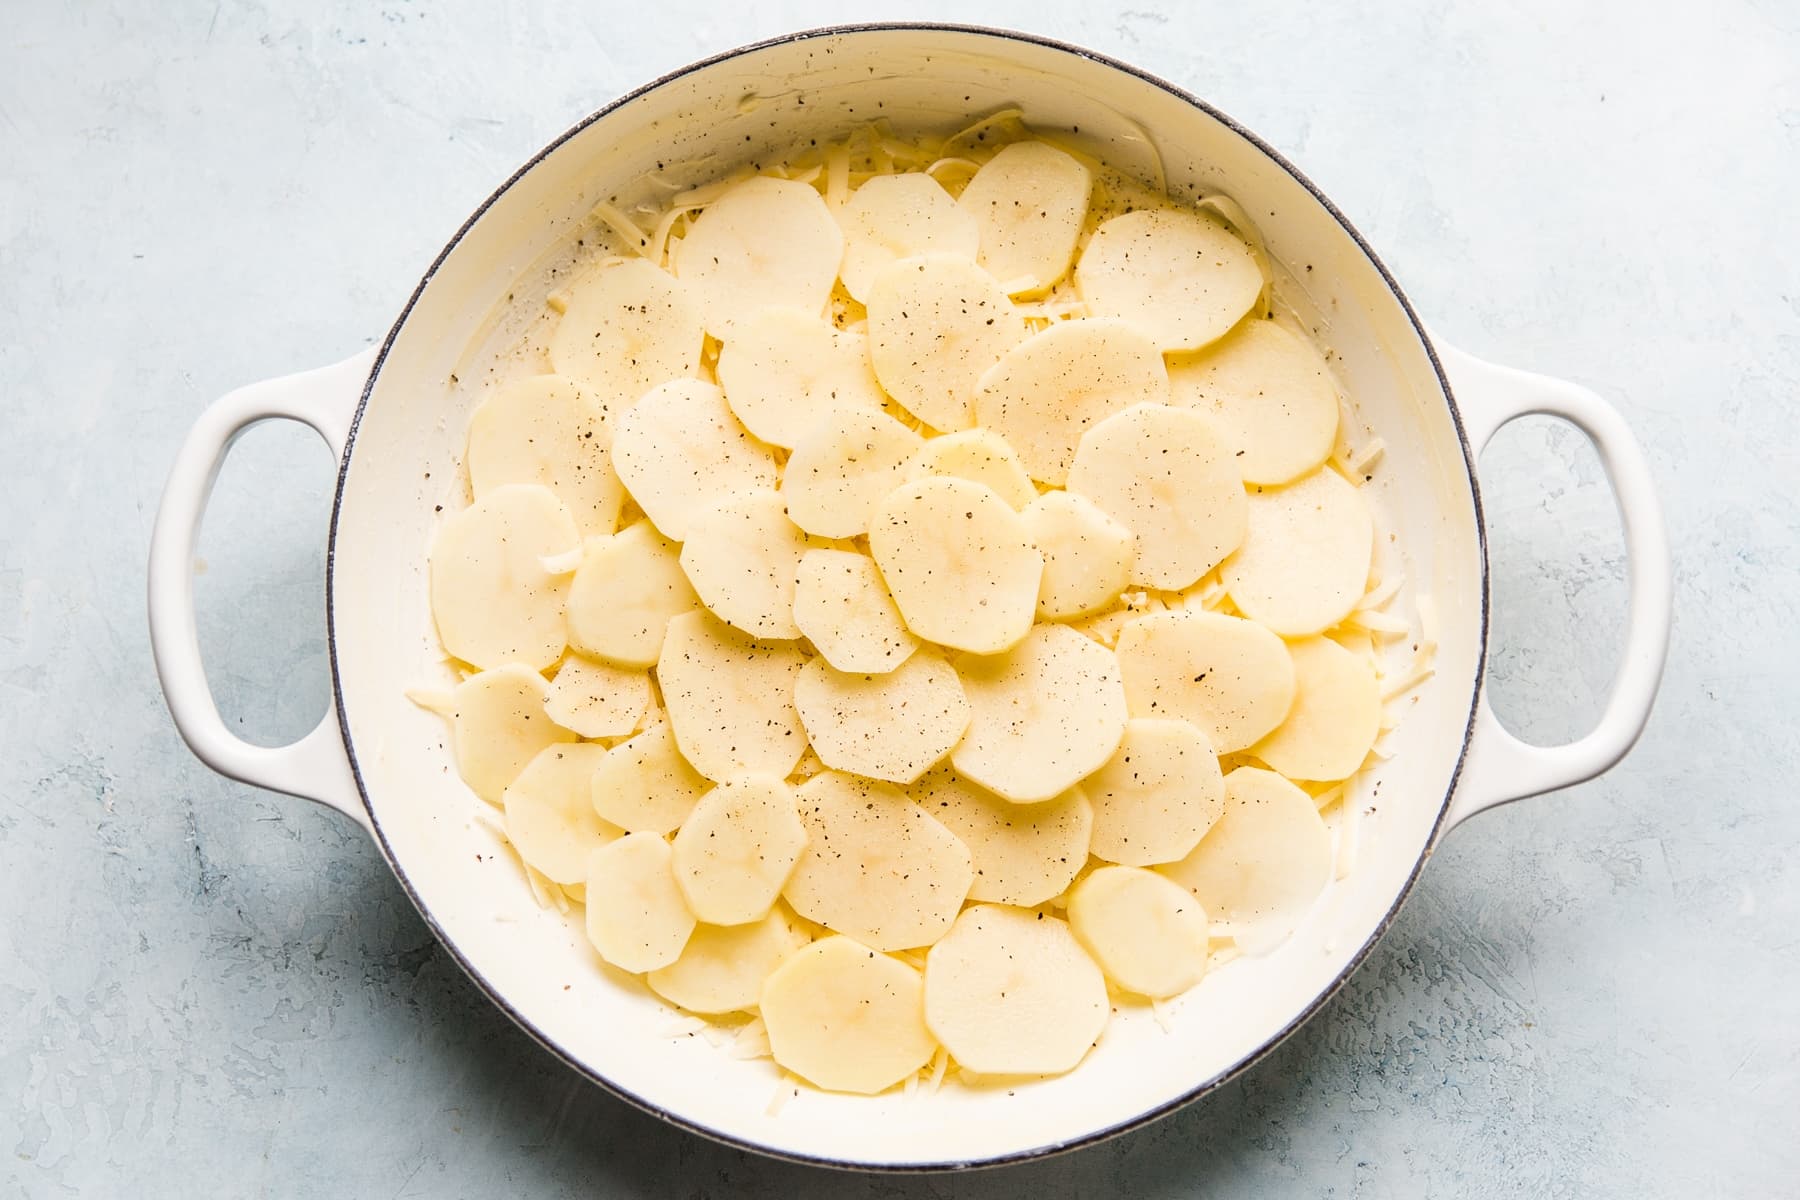 How to make au gratin potatoes